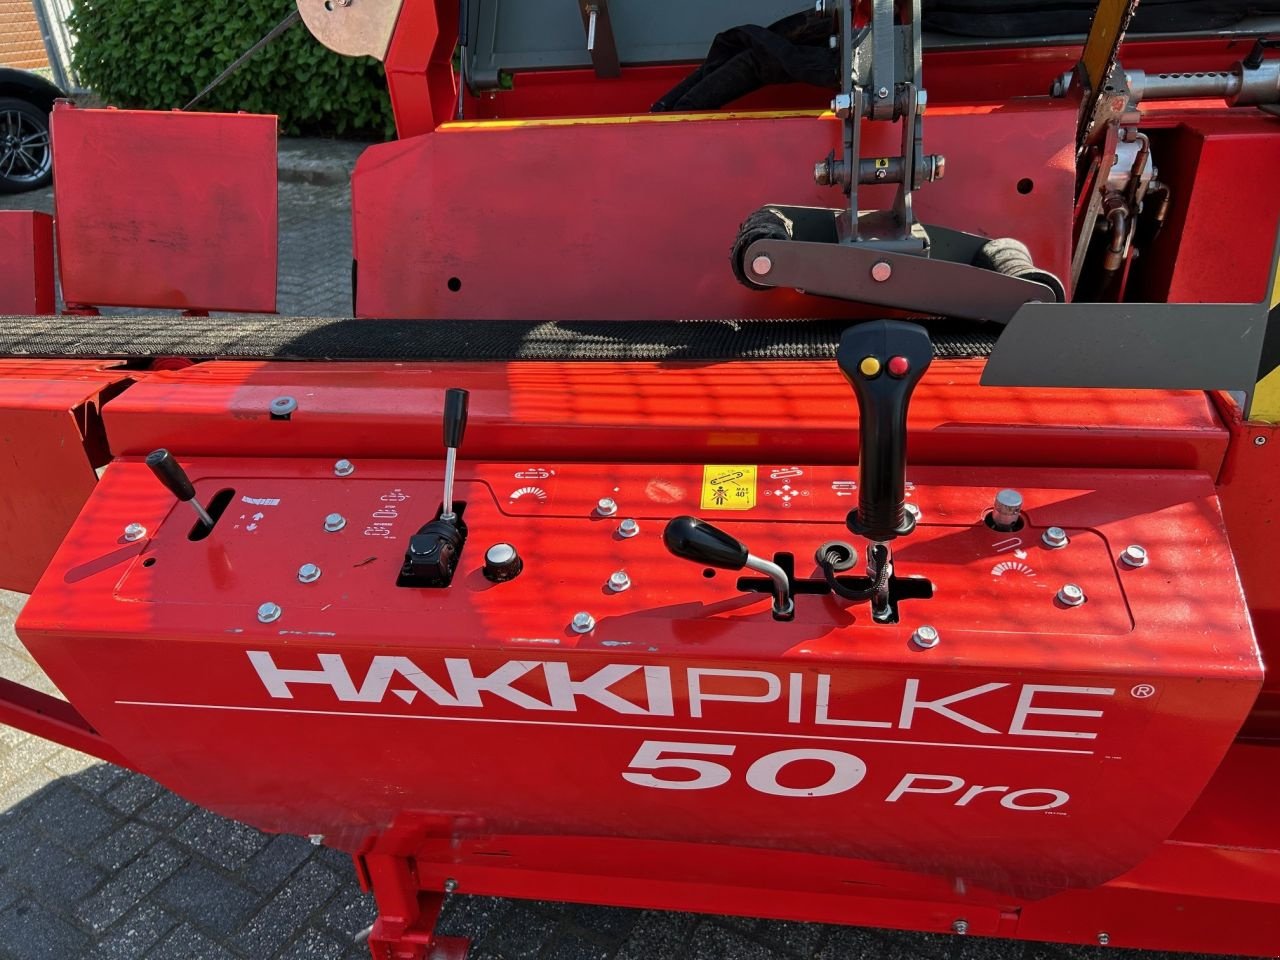 Holzspalter des Typs Hakki Pilke 50 PRO, Gebrauchtmaschine in Grou (Bild 8)